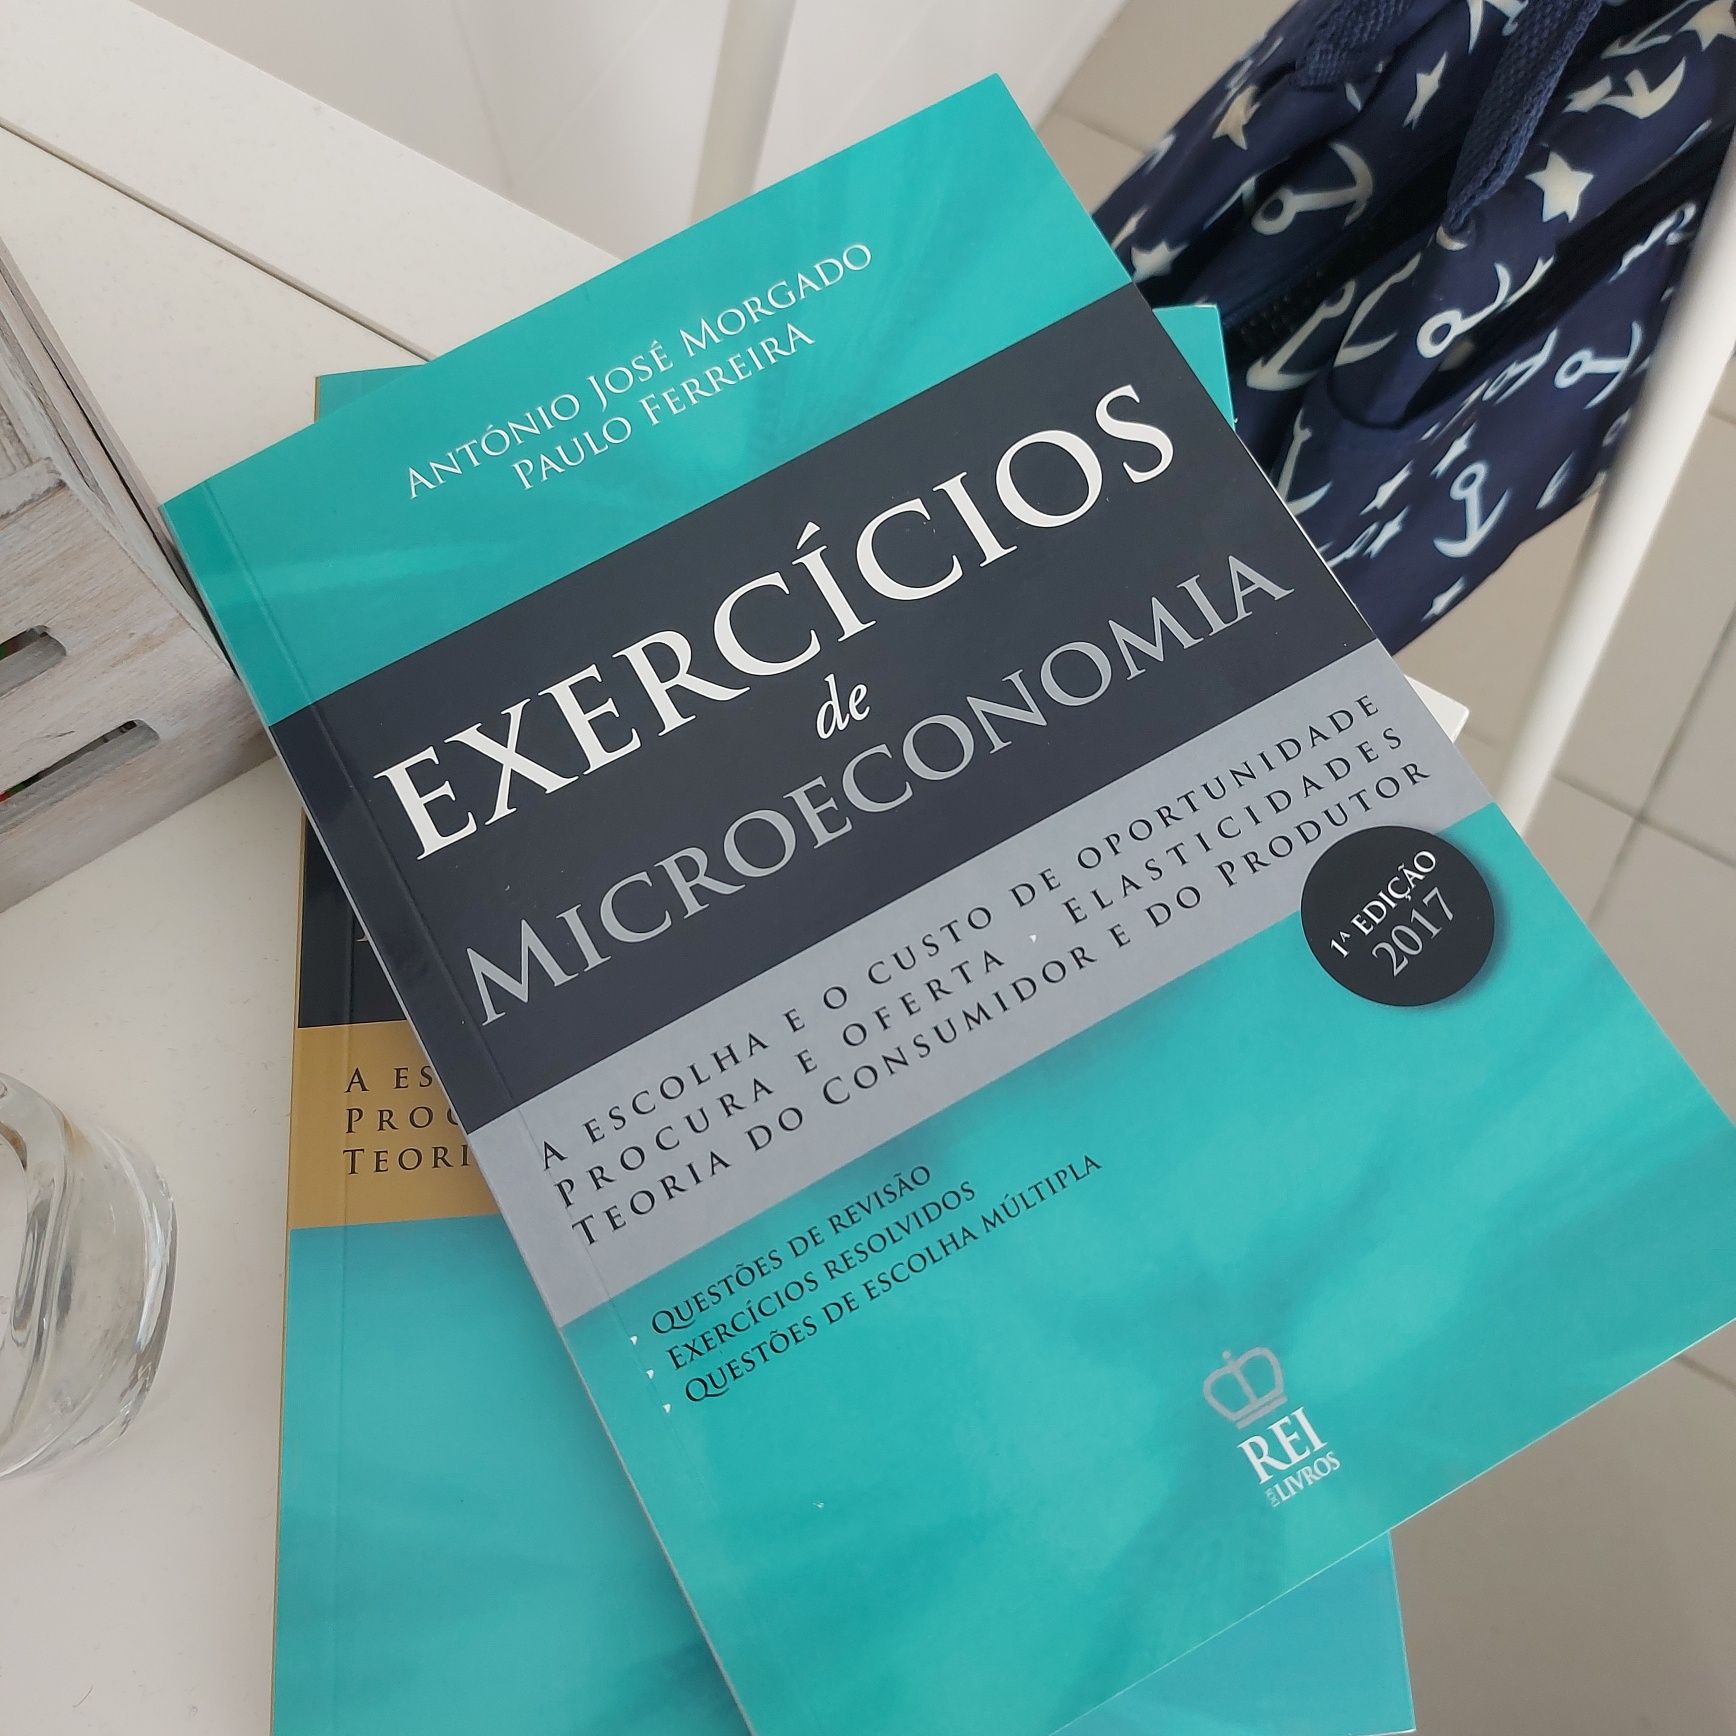 Microeconomia | Manual e Livro de Exercícios